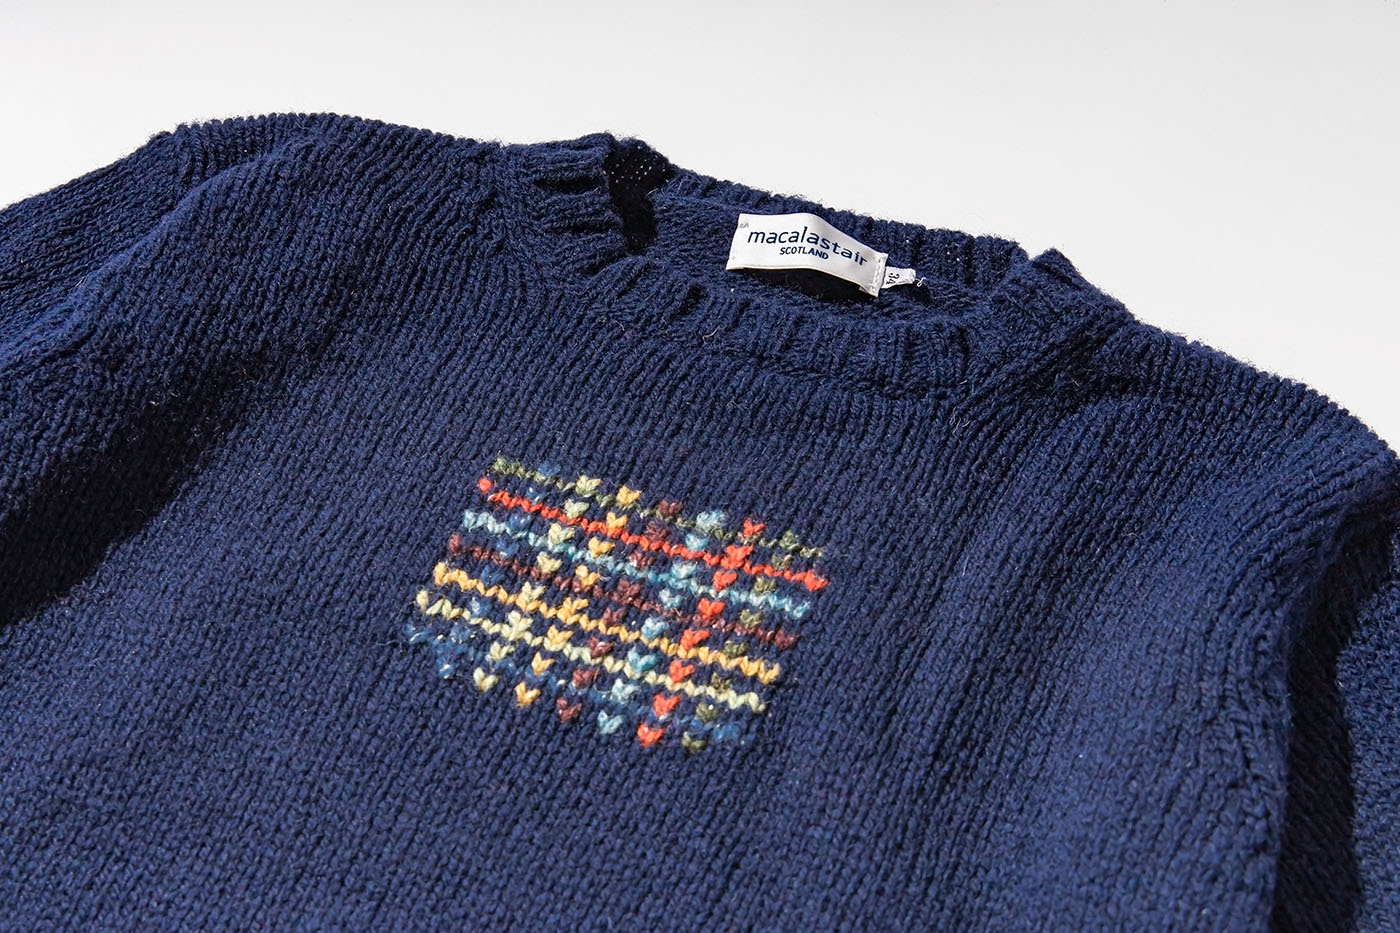 ブリティッシュメイド 札幌店 マカラスターのセーター